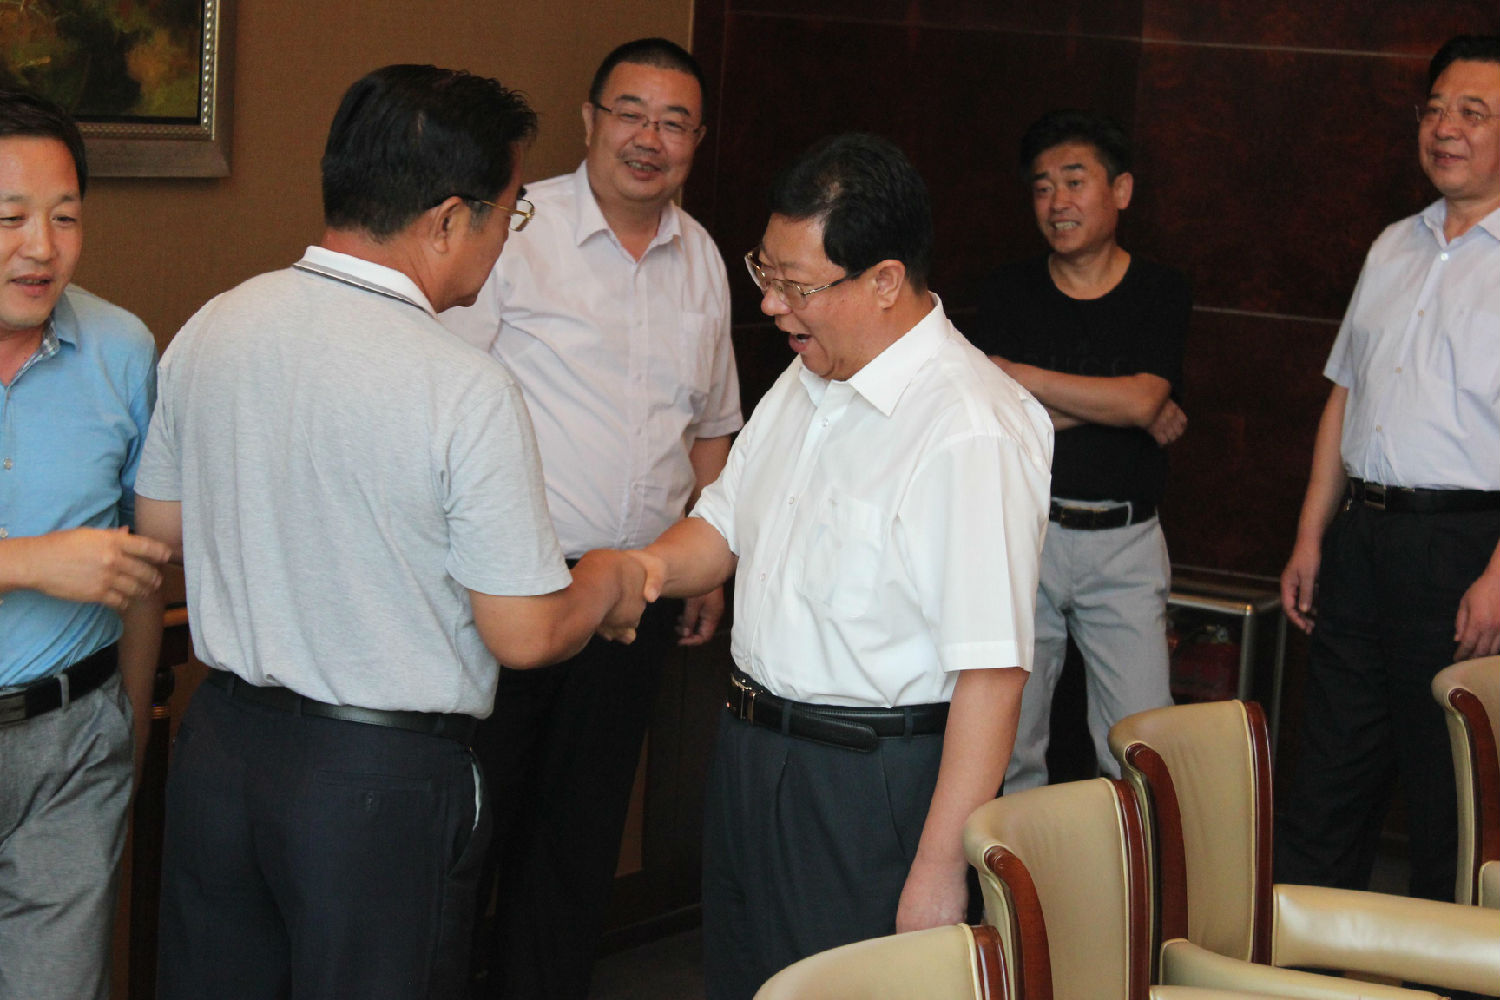 潍坊安丘市市长桑福岭先生与崔氏历史文化研究会会长崔立新先生、山东分会长崔连弟先生亲切握手